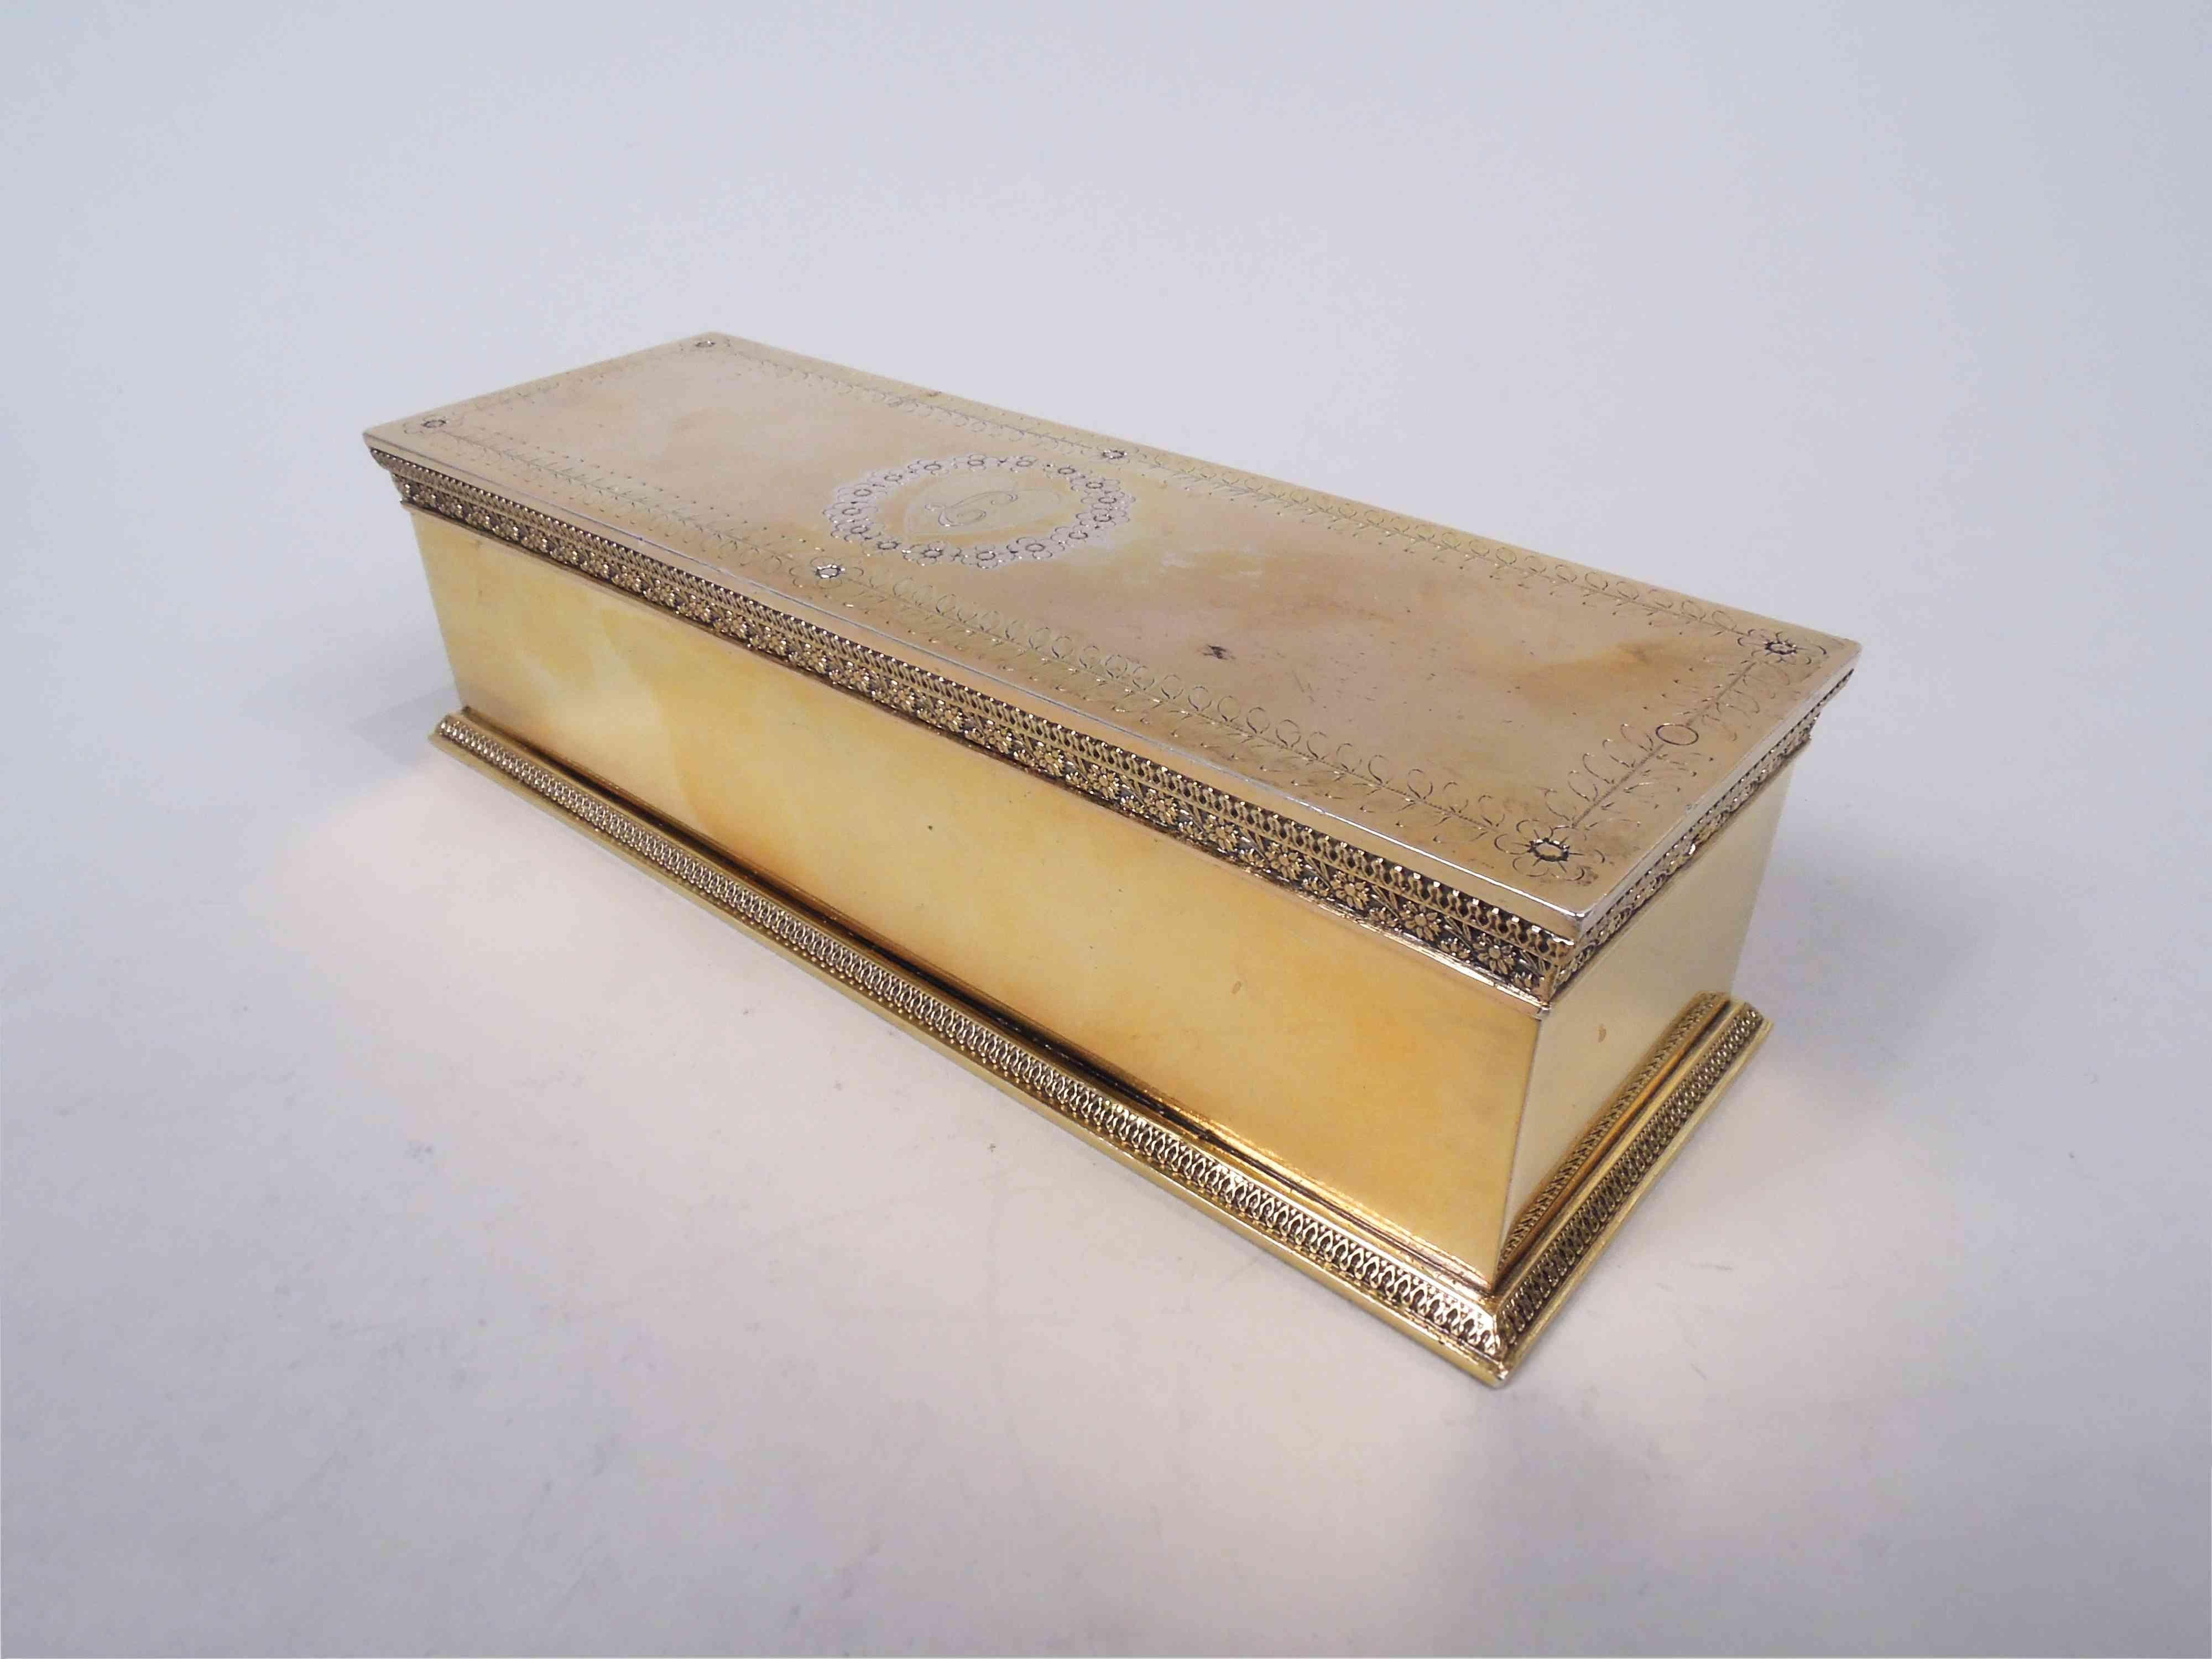 Restauration Boîte classique en argent doré. Fabriqué par Jean-Baptiste Claude Odiot à Paris, vers 1820. Rectangulaire avec des côtés droits et un bord de base en forme de feuille et de flèche. La couverture est plate et articulée avec la même